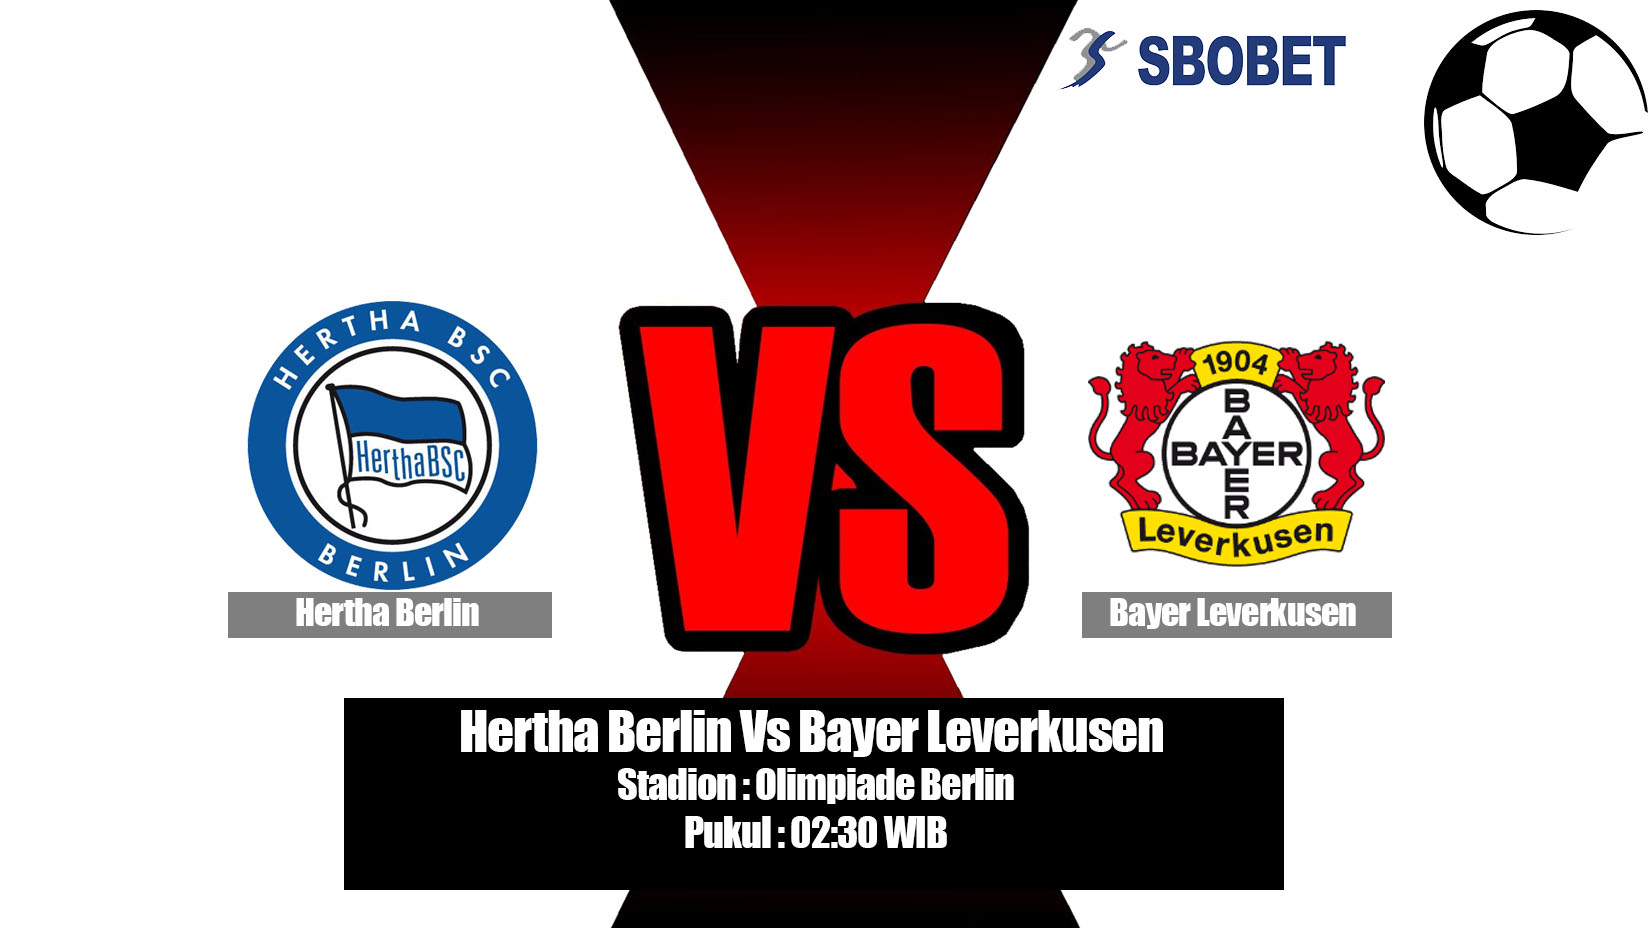 Prediksi Bola Hertha Berlin Vs Bayer Leverkusen 18 Mei 2019